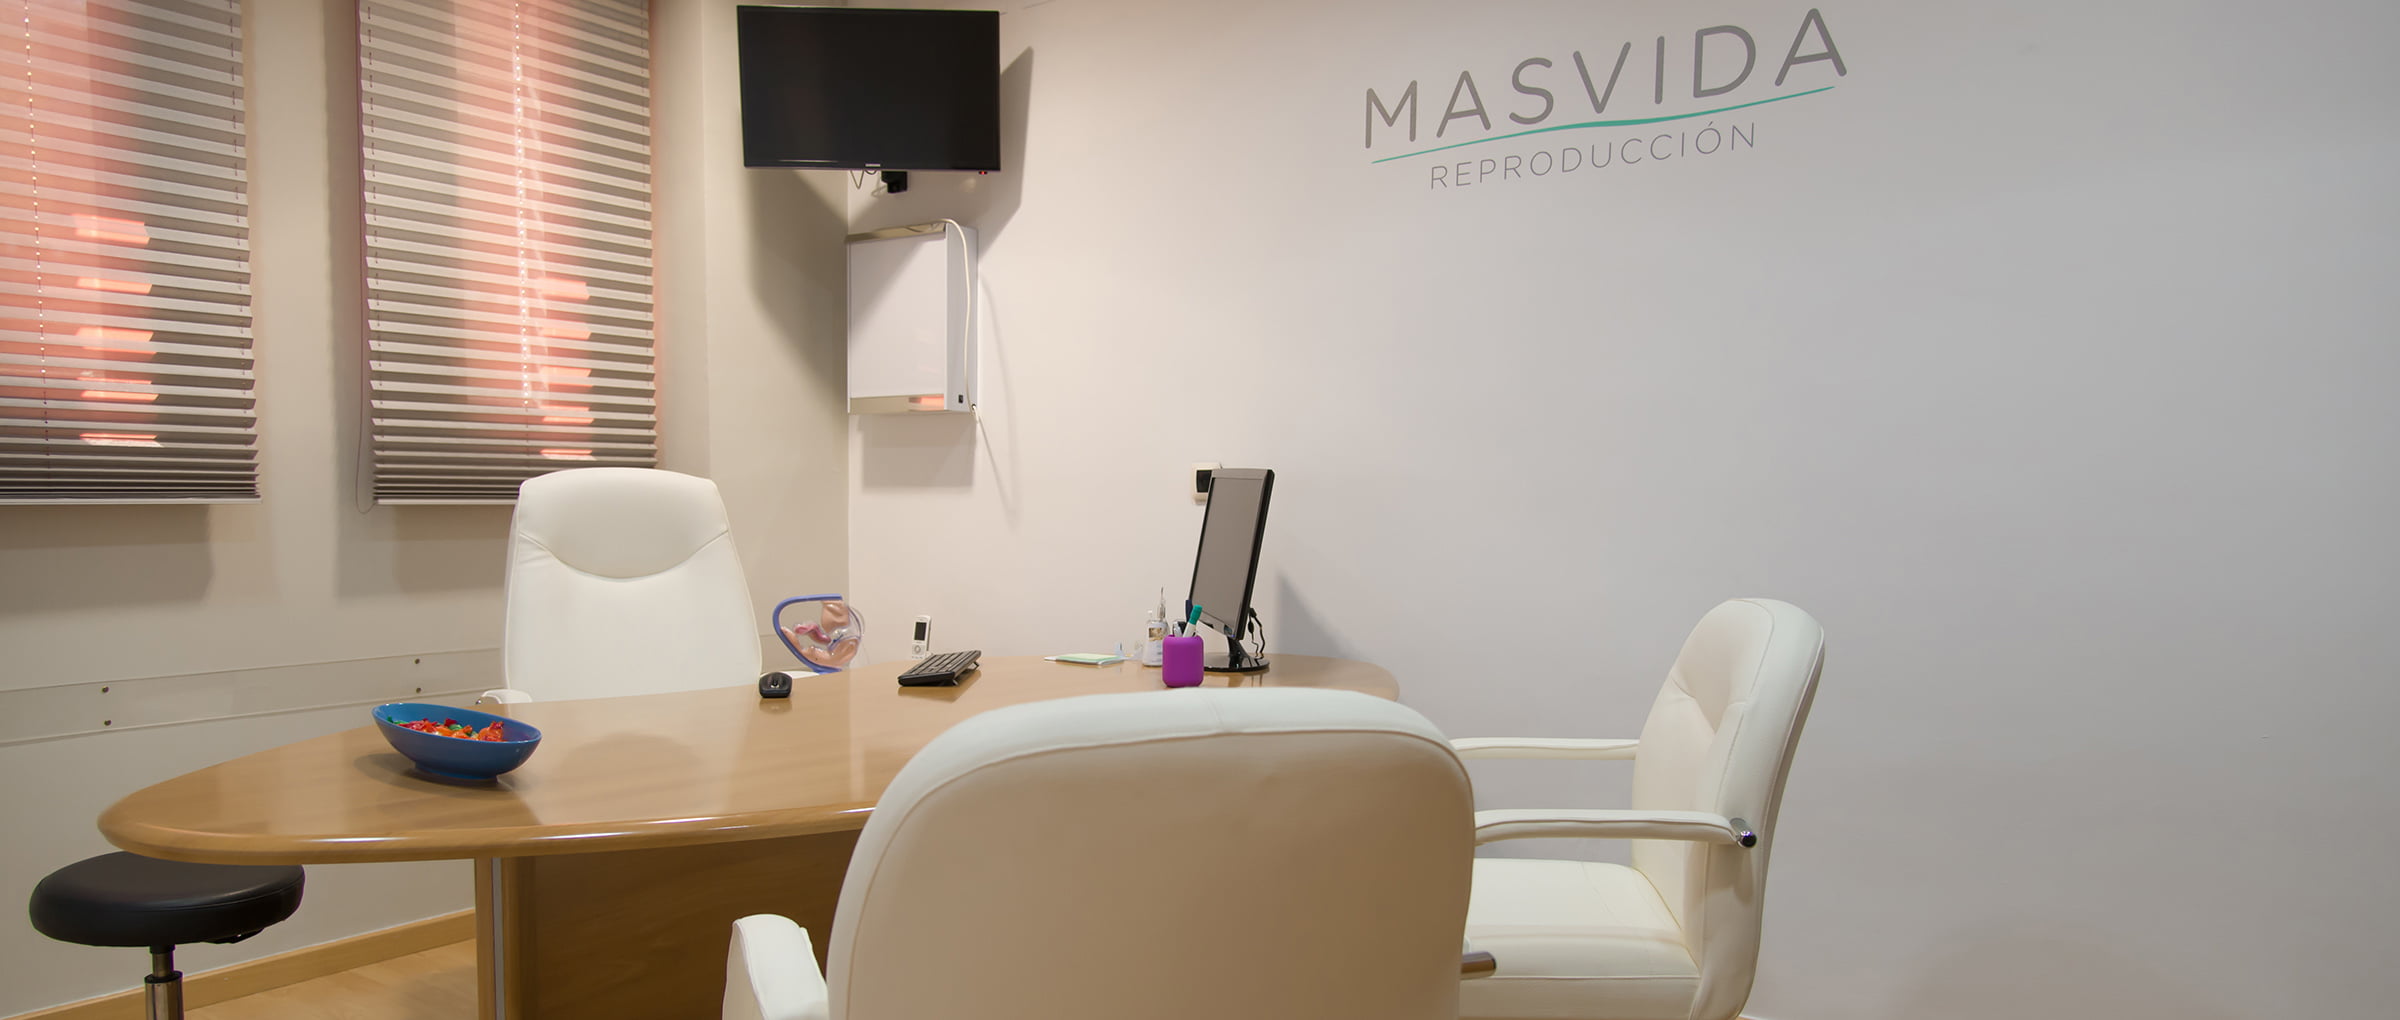 Studio medico MASVIDA Reproduccion